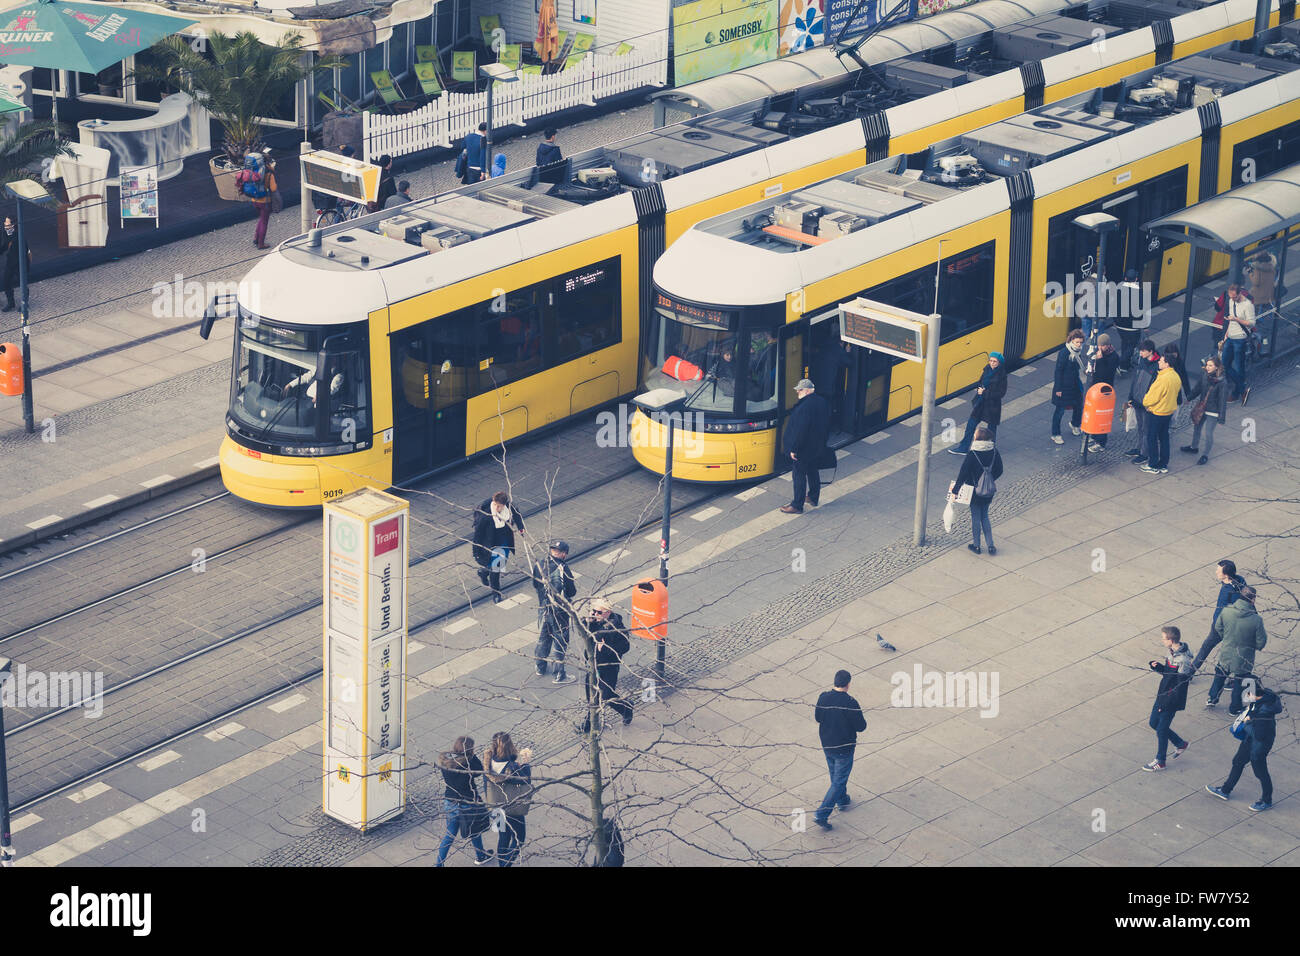 Berlin, Deutschland - 30. März 2016: Menschen am Bahnhof Straßenbahn station am Alexanderplatz in Berlin, Deutschland. Stockfoto